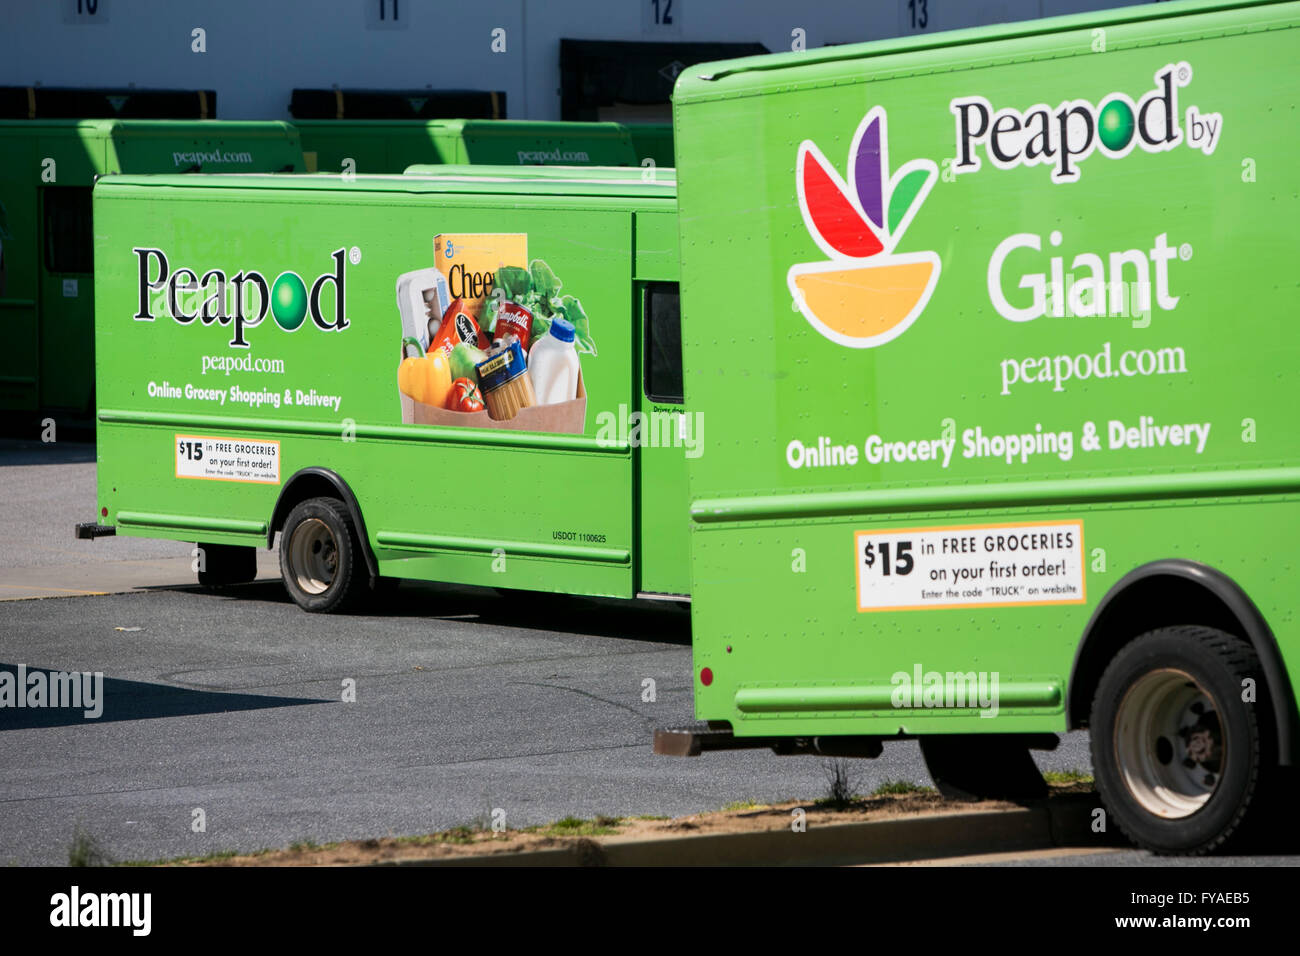 Les fourgonnettes de livraison avec l'extérieur du logos Peapod un entrepôt de distribution dans la région de Hanover, Maryland le 10 avril 2016. Banque D'Images